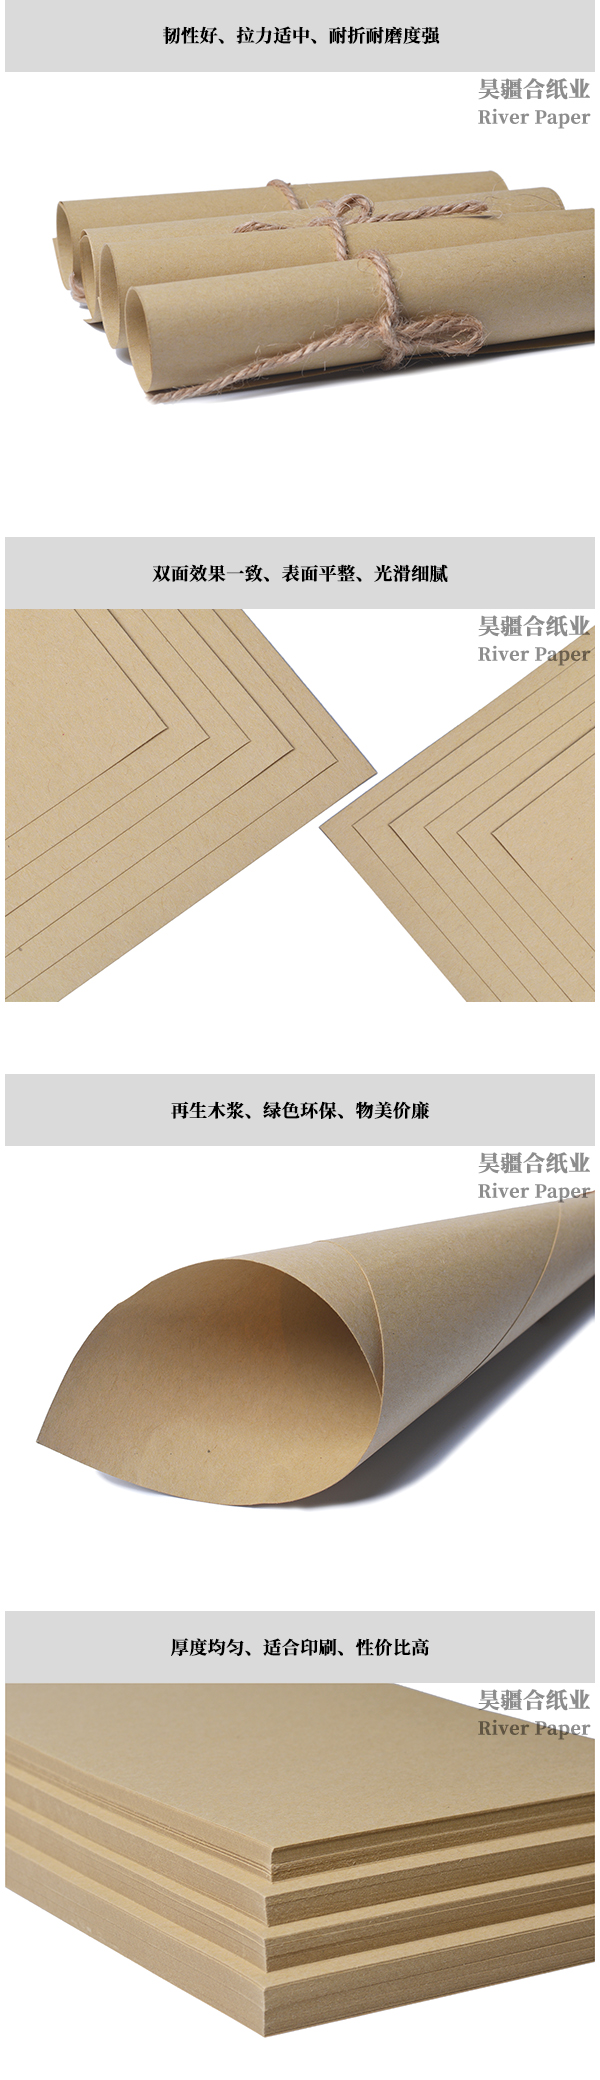 Envelope Refined Kraft Paper 45-150g